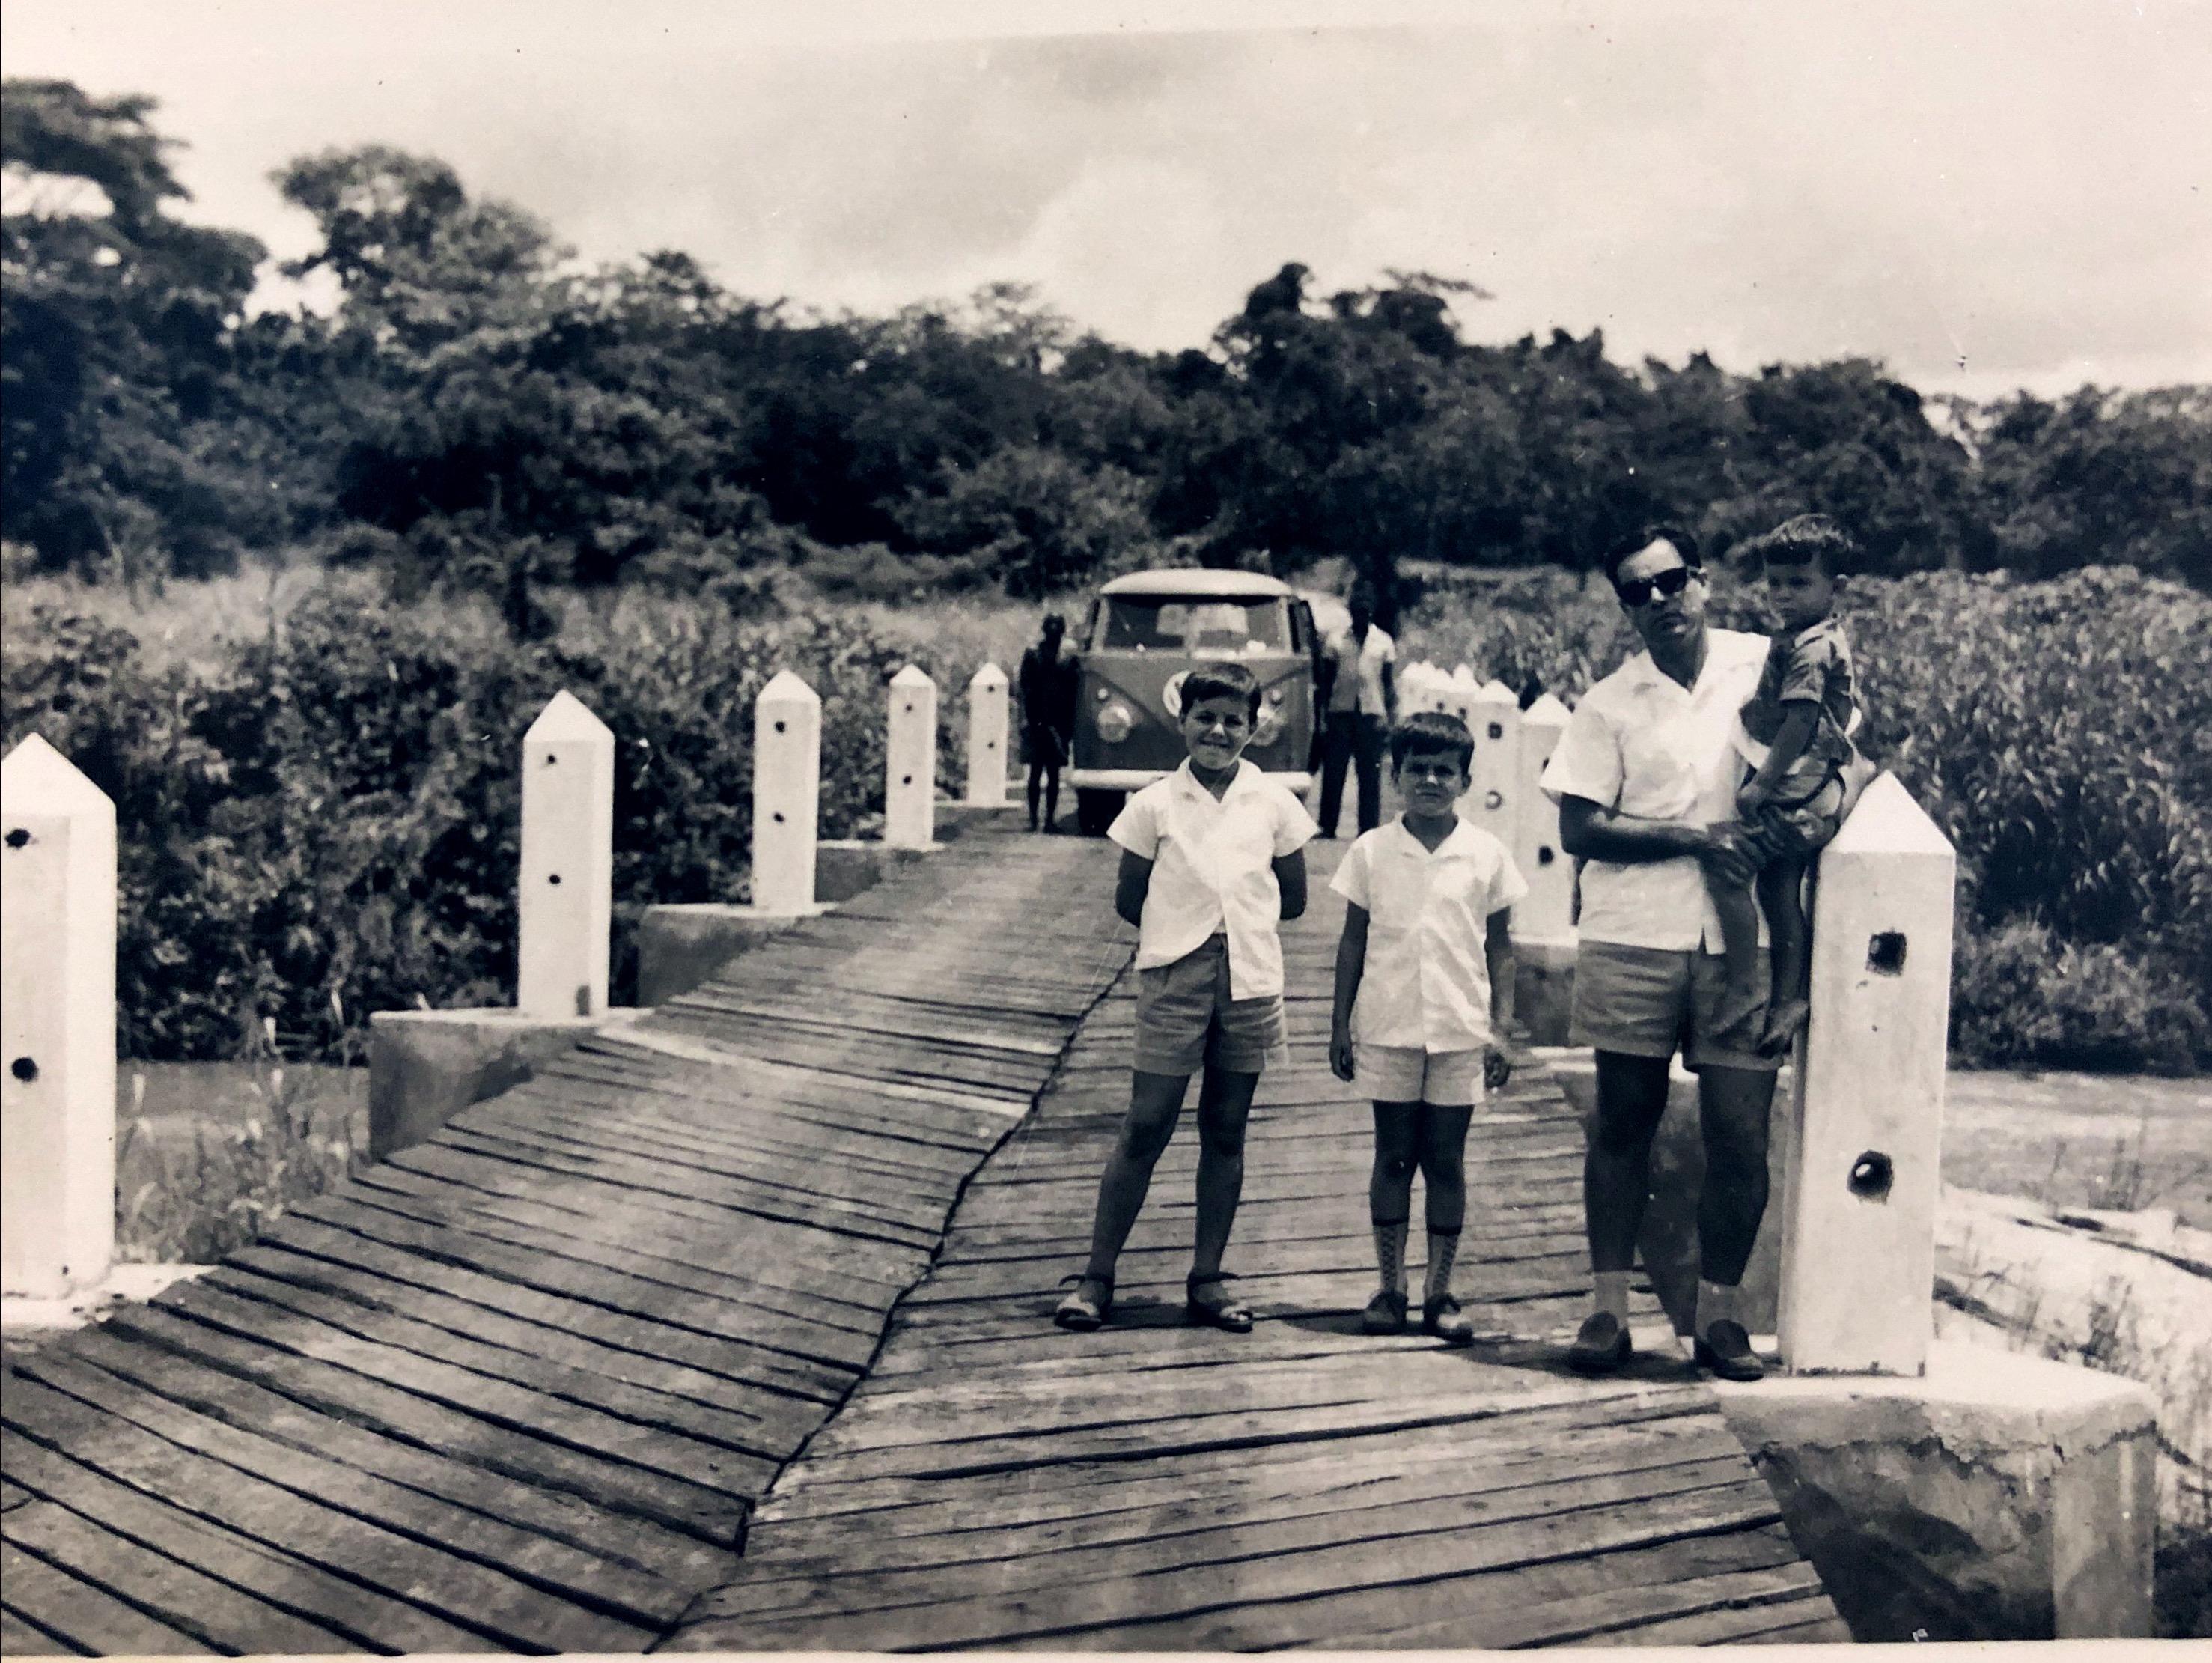 Norte de Moçambique
1958